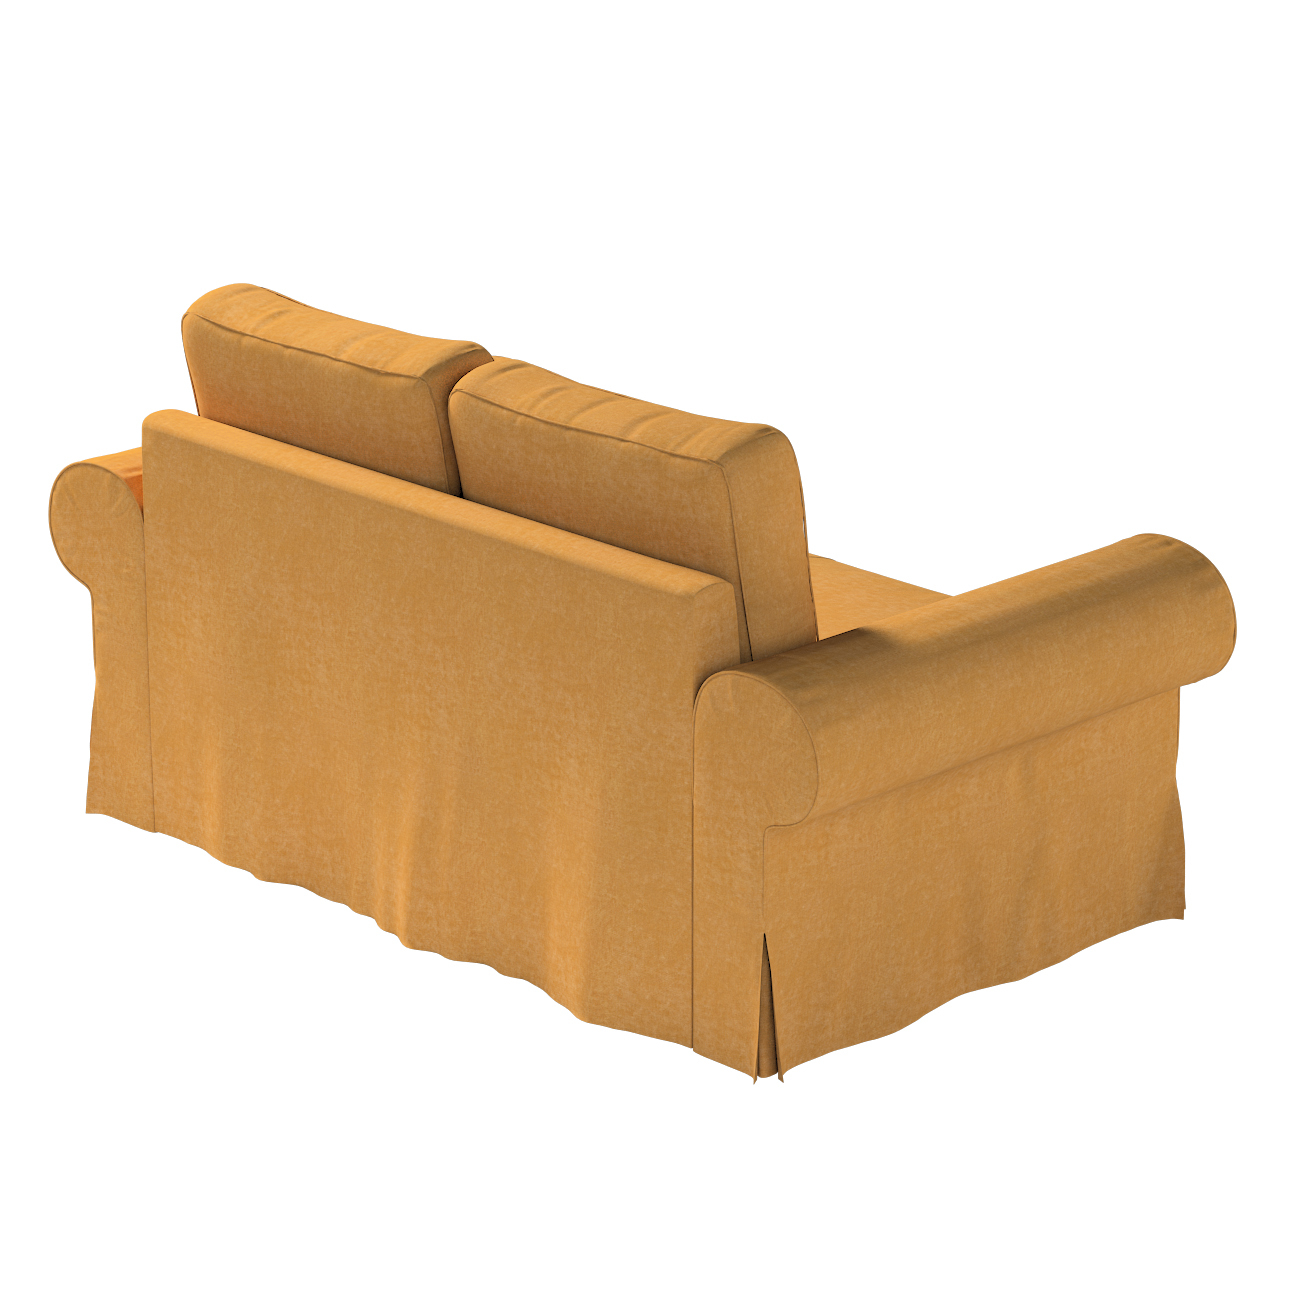 Bezug für Backabro 2-Sitzer Sofa ausklappbar, honiggelb, Bezug für Backabro günstig online kaufen